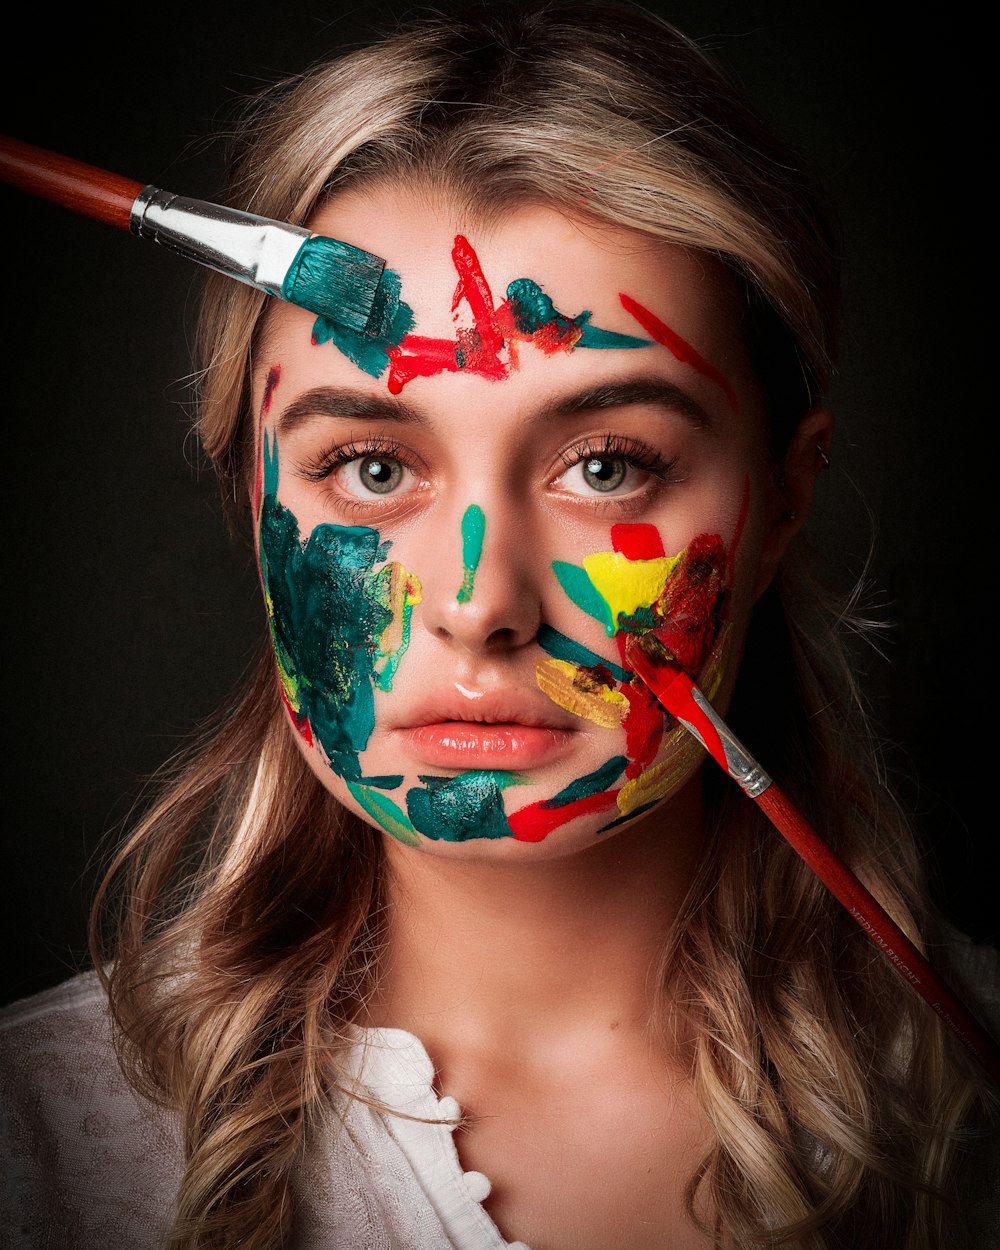 femme avec de la peinture faciale rouge, verte et jaune